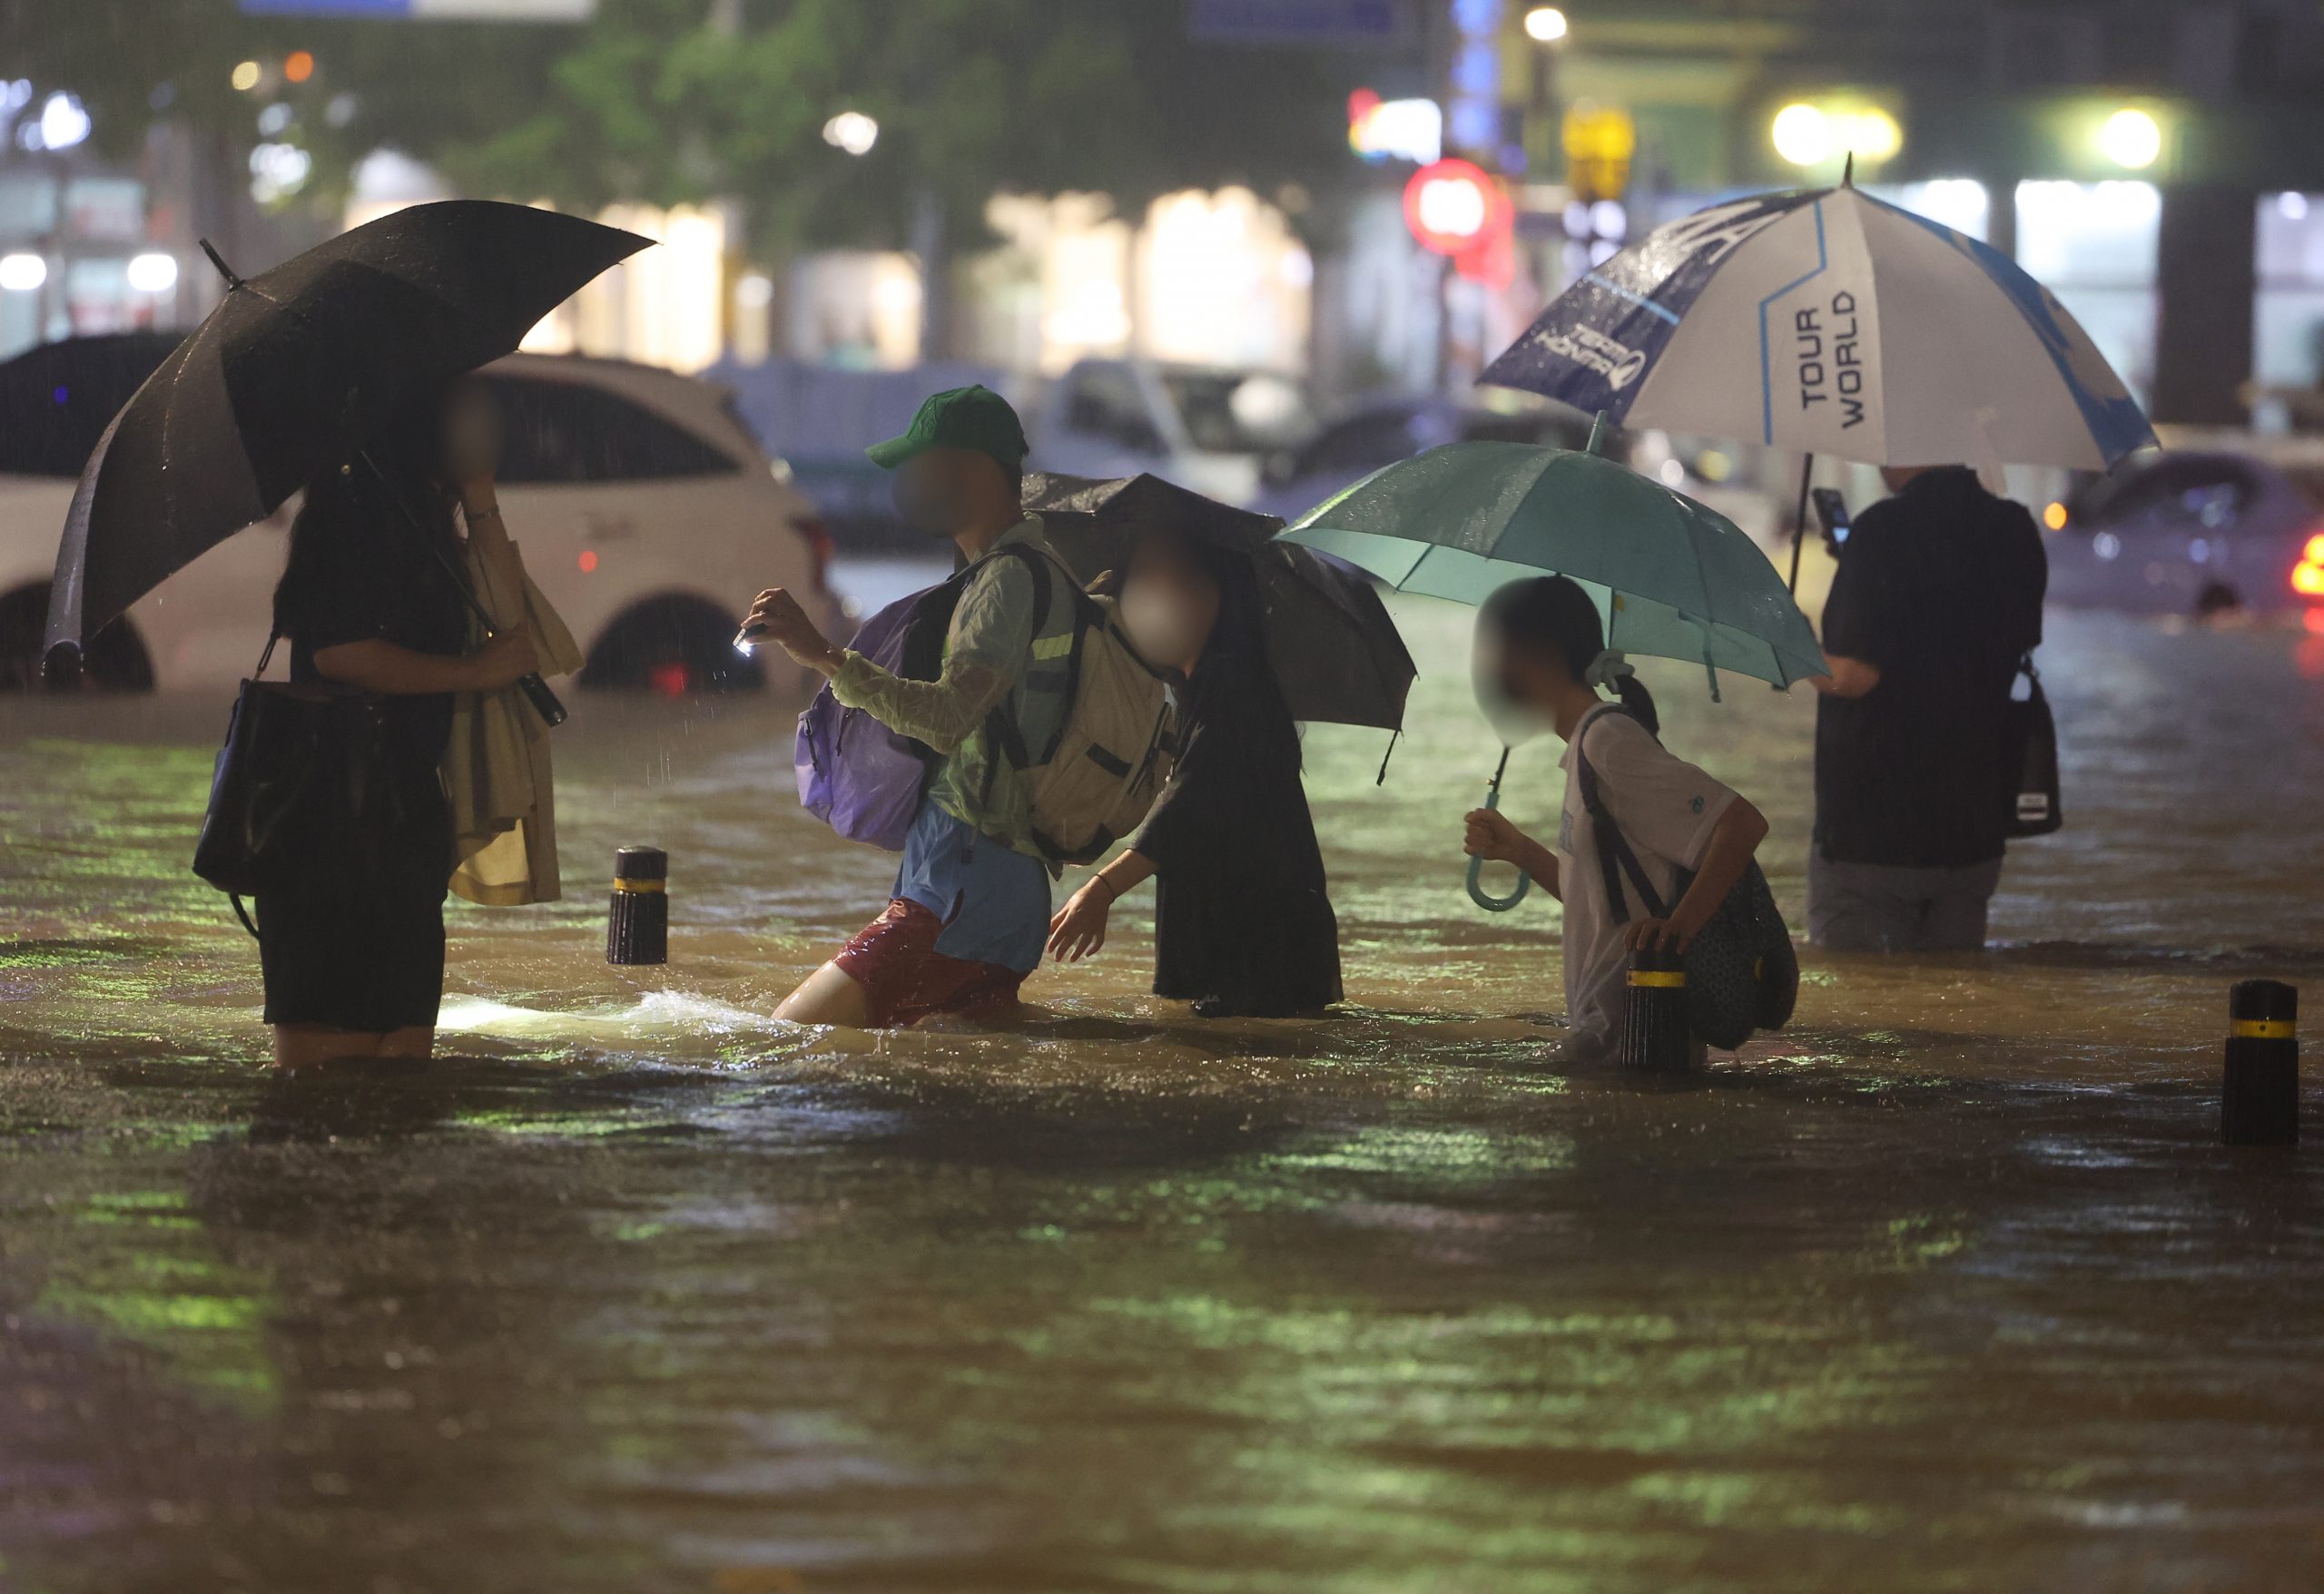  首尔首都圈80年来罕见暴雨 洪水吞车地铁站现“大瀑布”7死6失踪